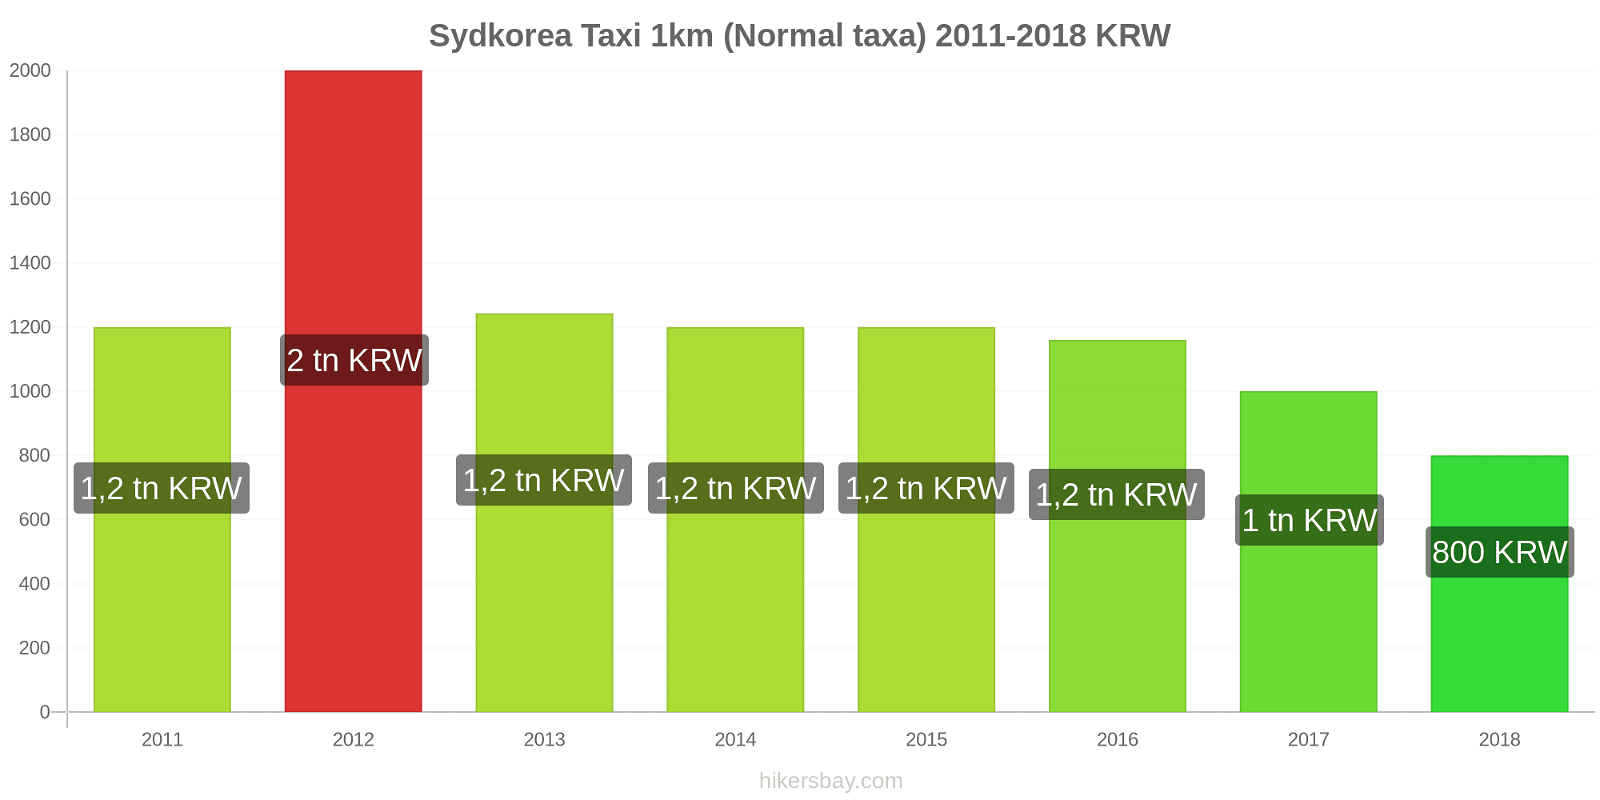 Sydkorea prisändringar Taxi 1km (Normal taxa) hikersbay.com